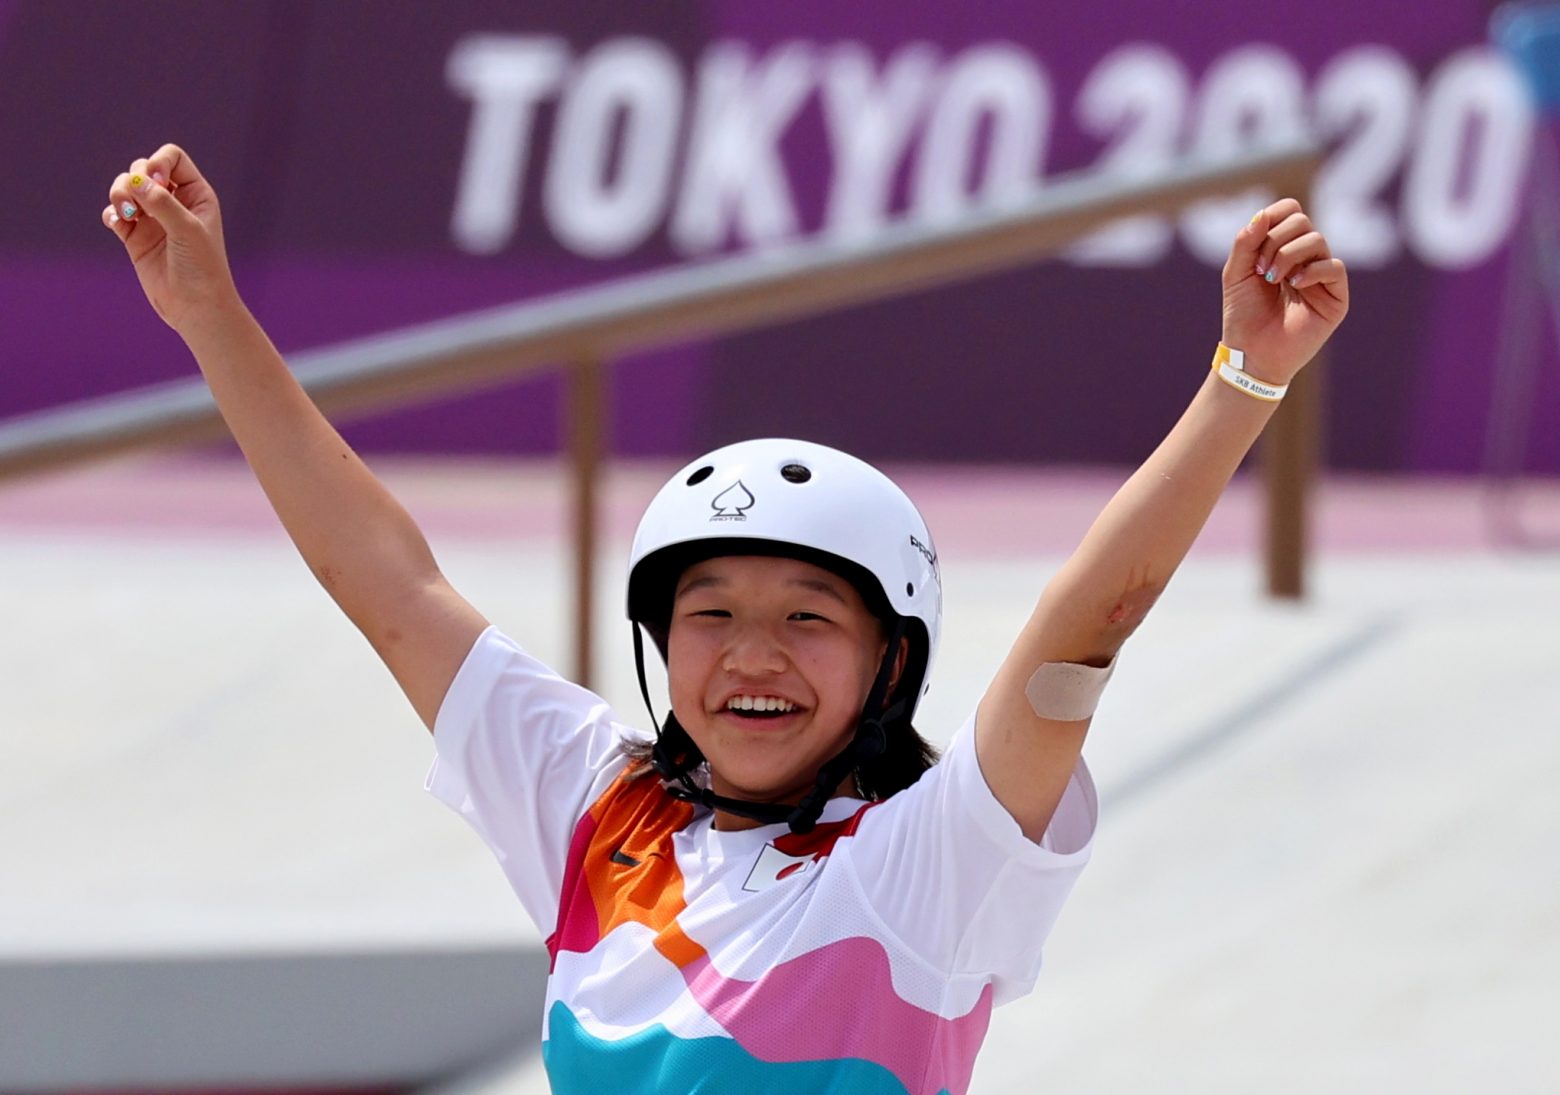 Έγραψε ιστορία η 13χρονη γιαπωνέζα Μομίγι Νισίγια - Έγινε χρυσή ολυμπιονίκης στο street skateboard